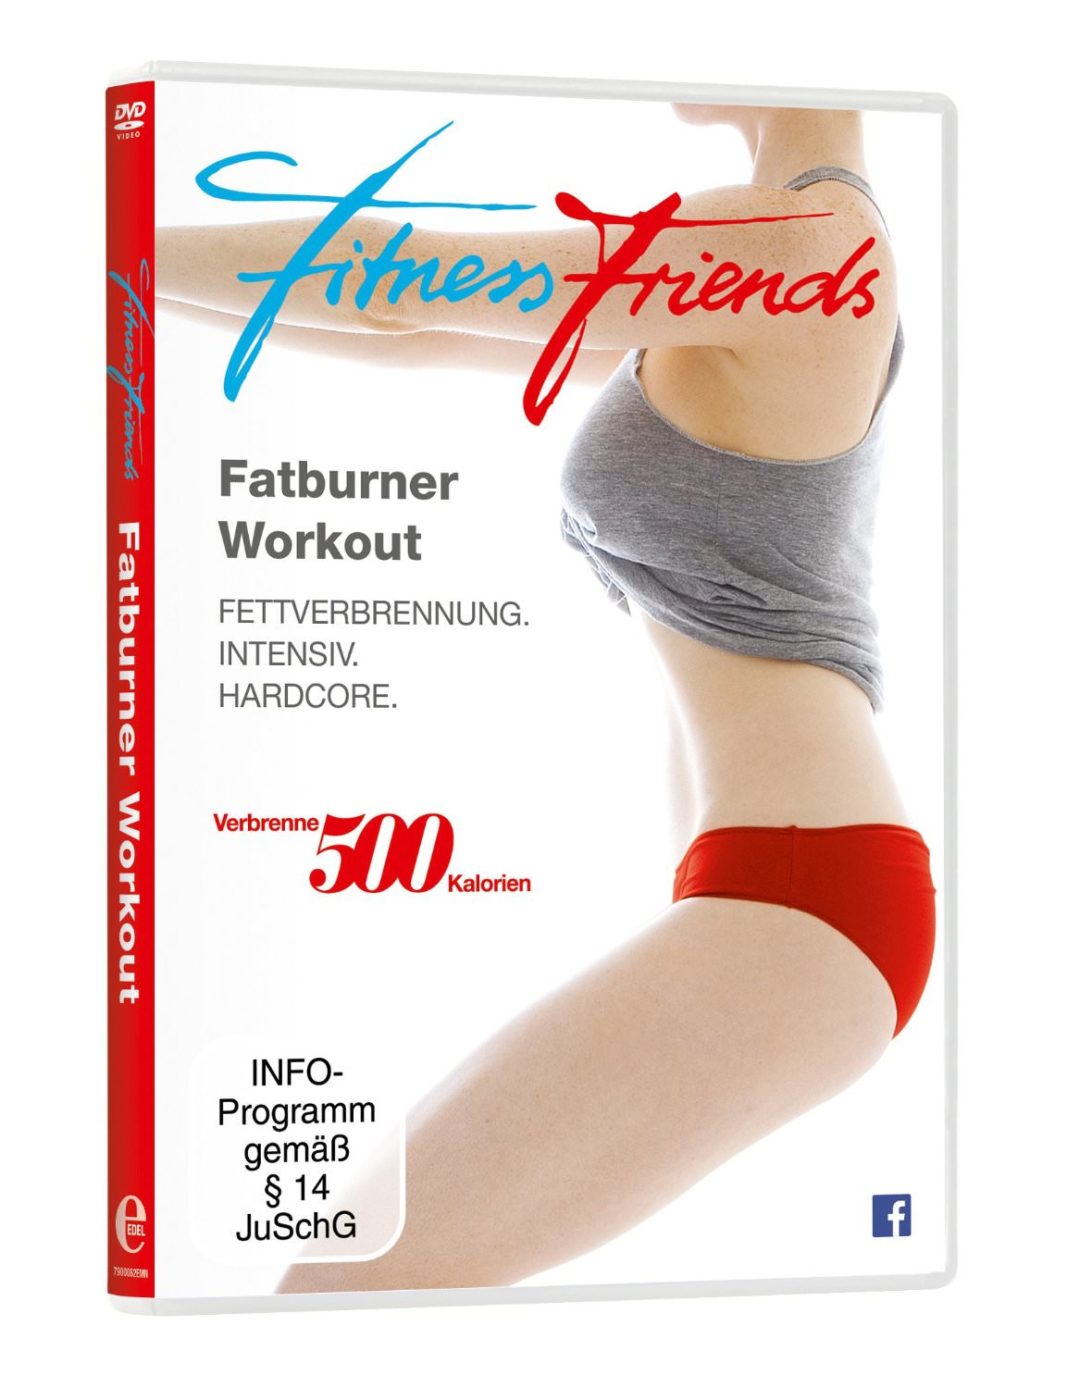 Fitness Friends Fatburner Workout DVD